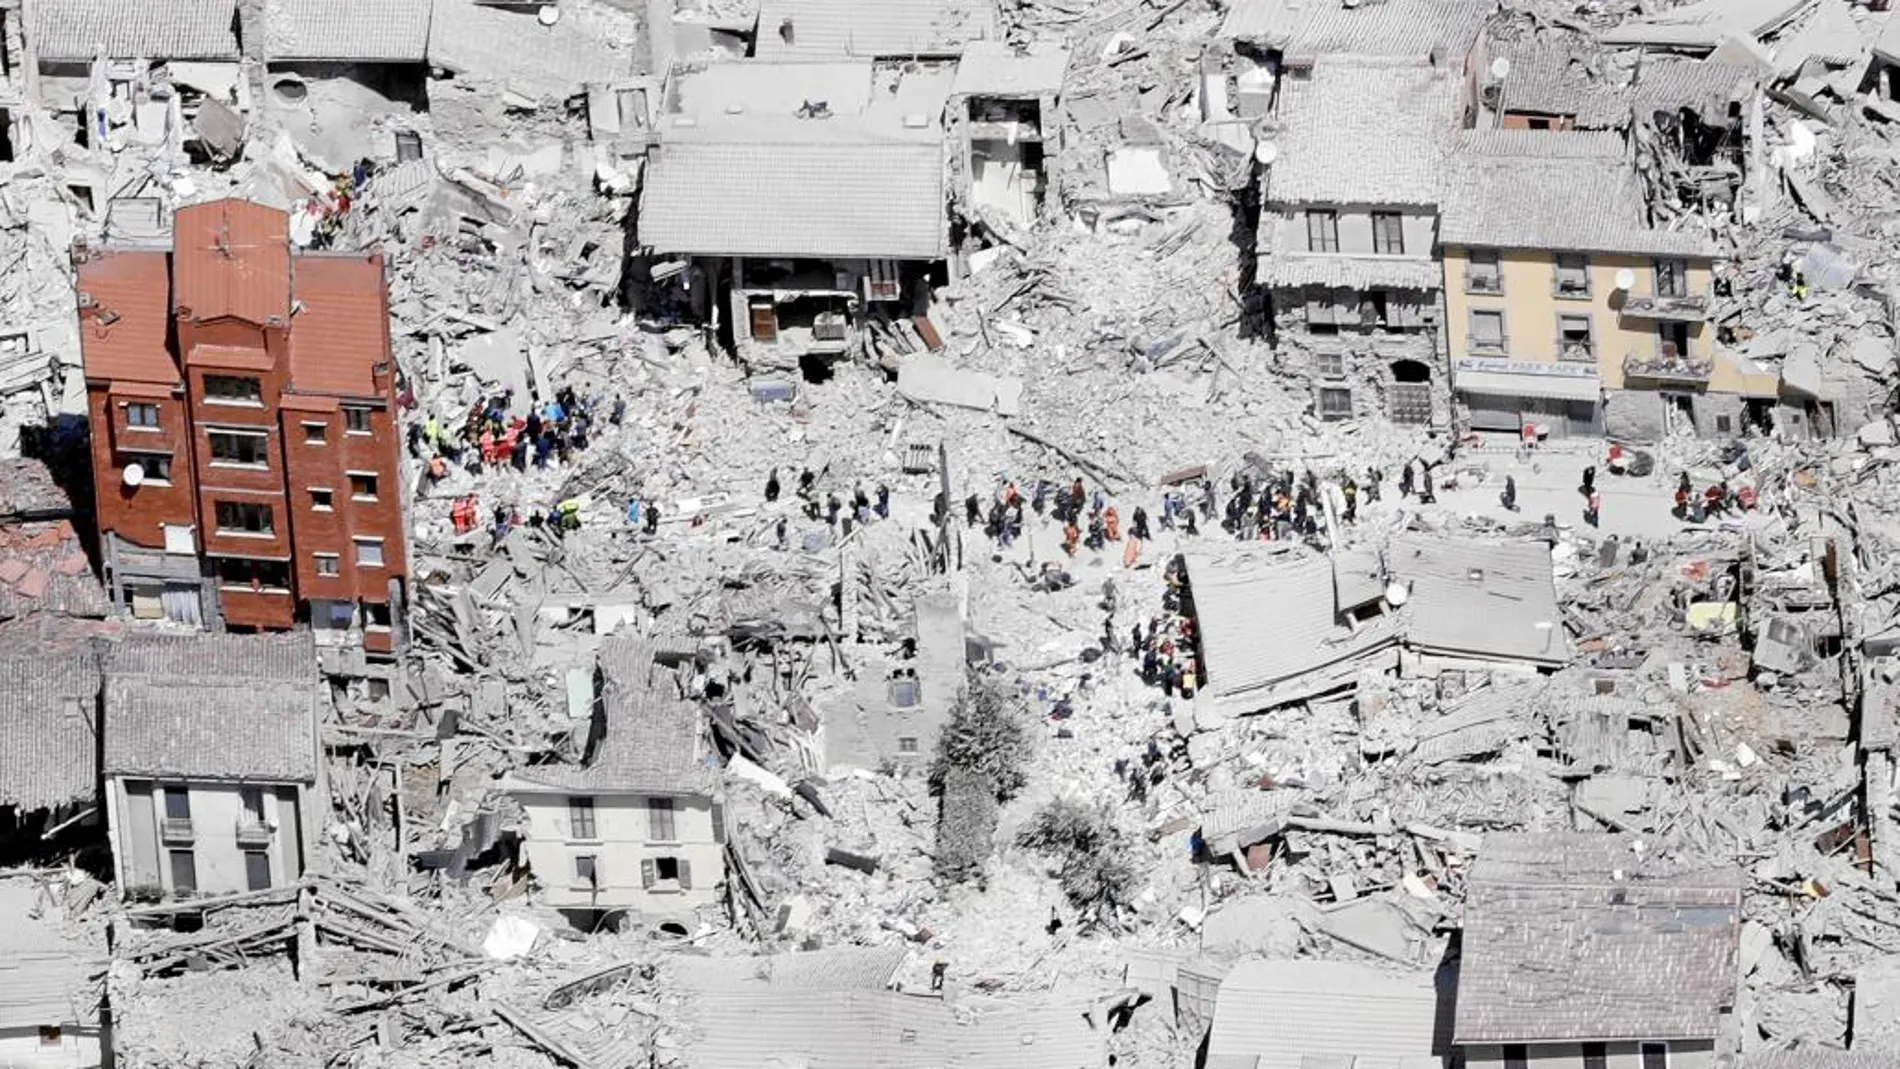 Vista aérea del centro de Amatrice, arrasado por el temblor de 6,2 grados en la escala Richter, y que también asoló las localidades de Norcia y Accumoli